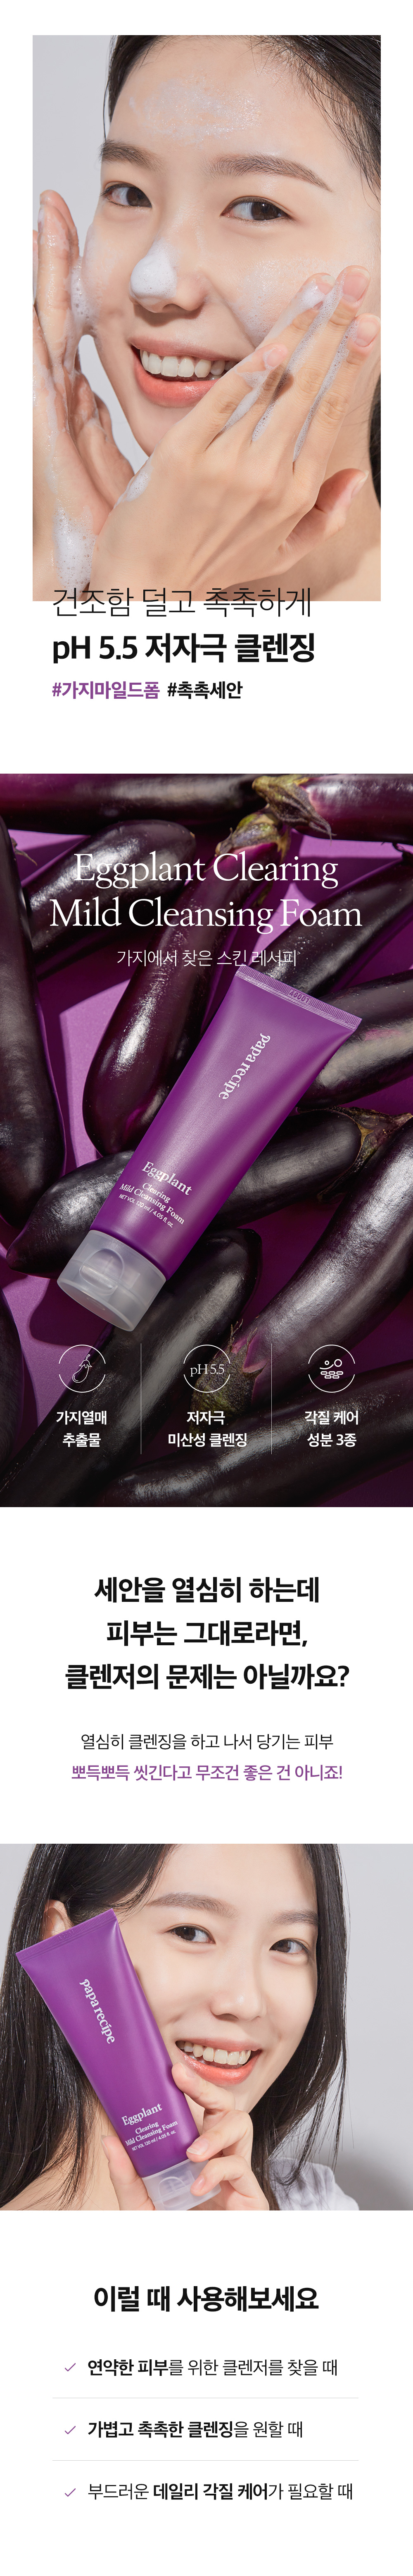 韓國食品-[Papa Recipe 1+1] Eggplant Clearing Cleansing Oil + Mild Cleansing Foam Set